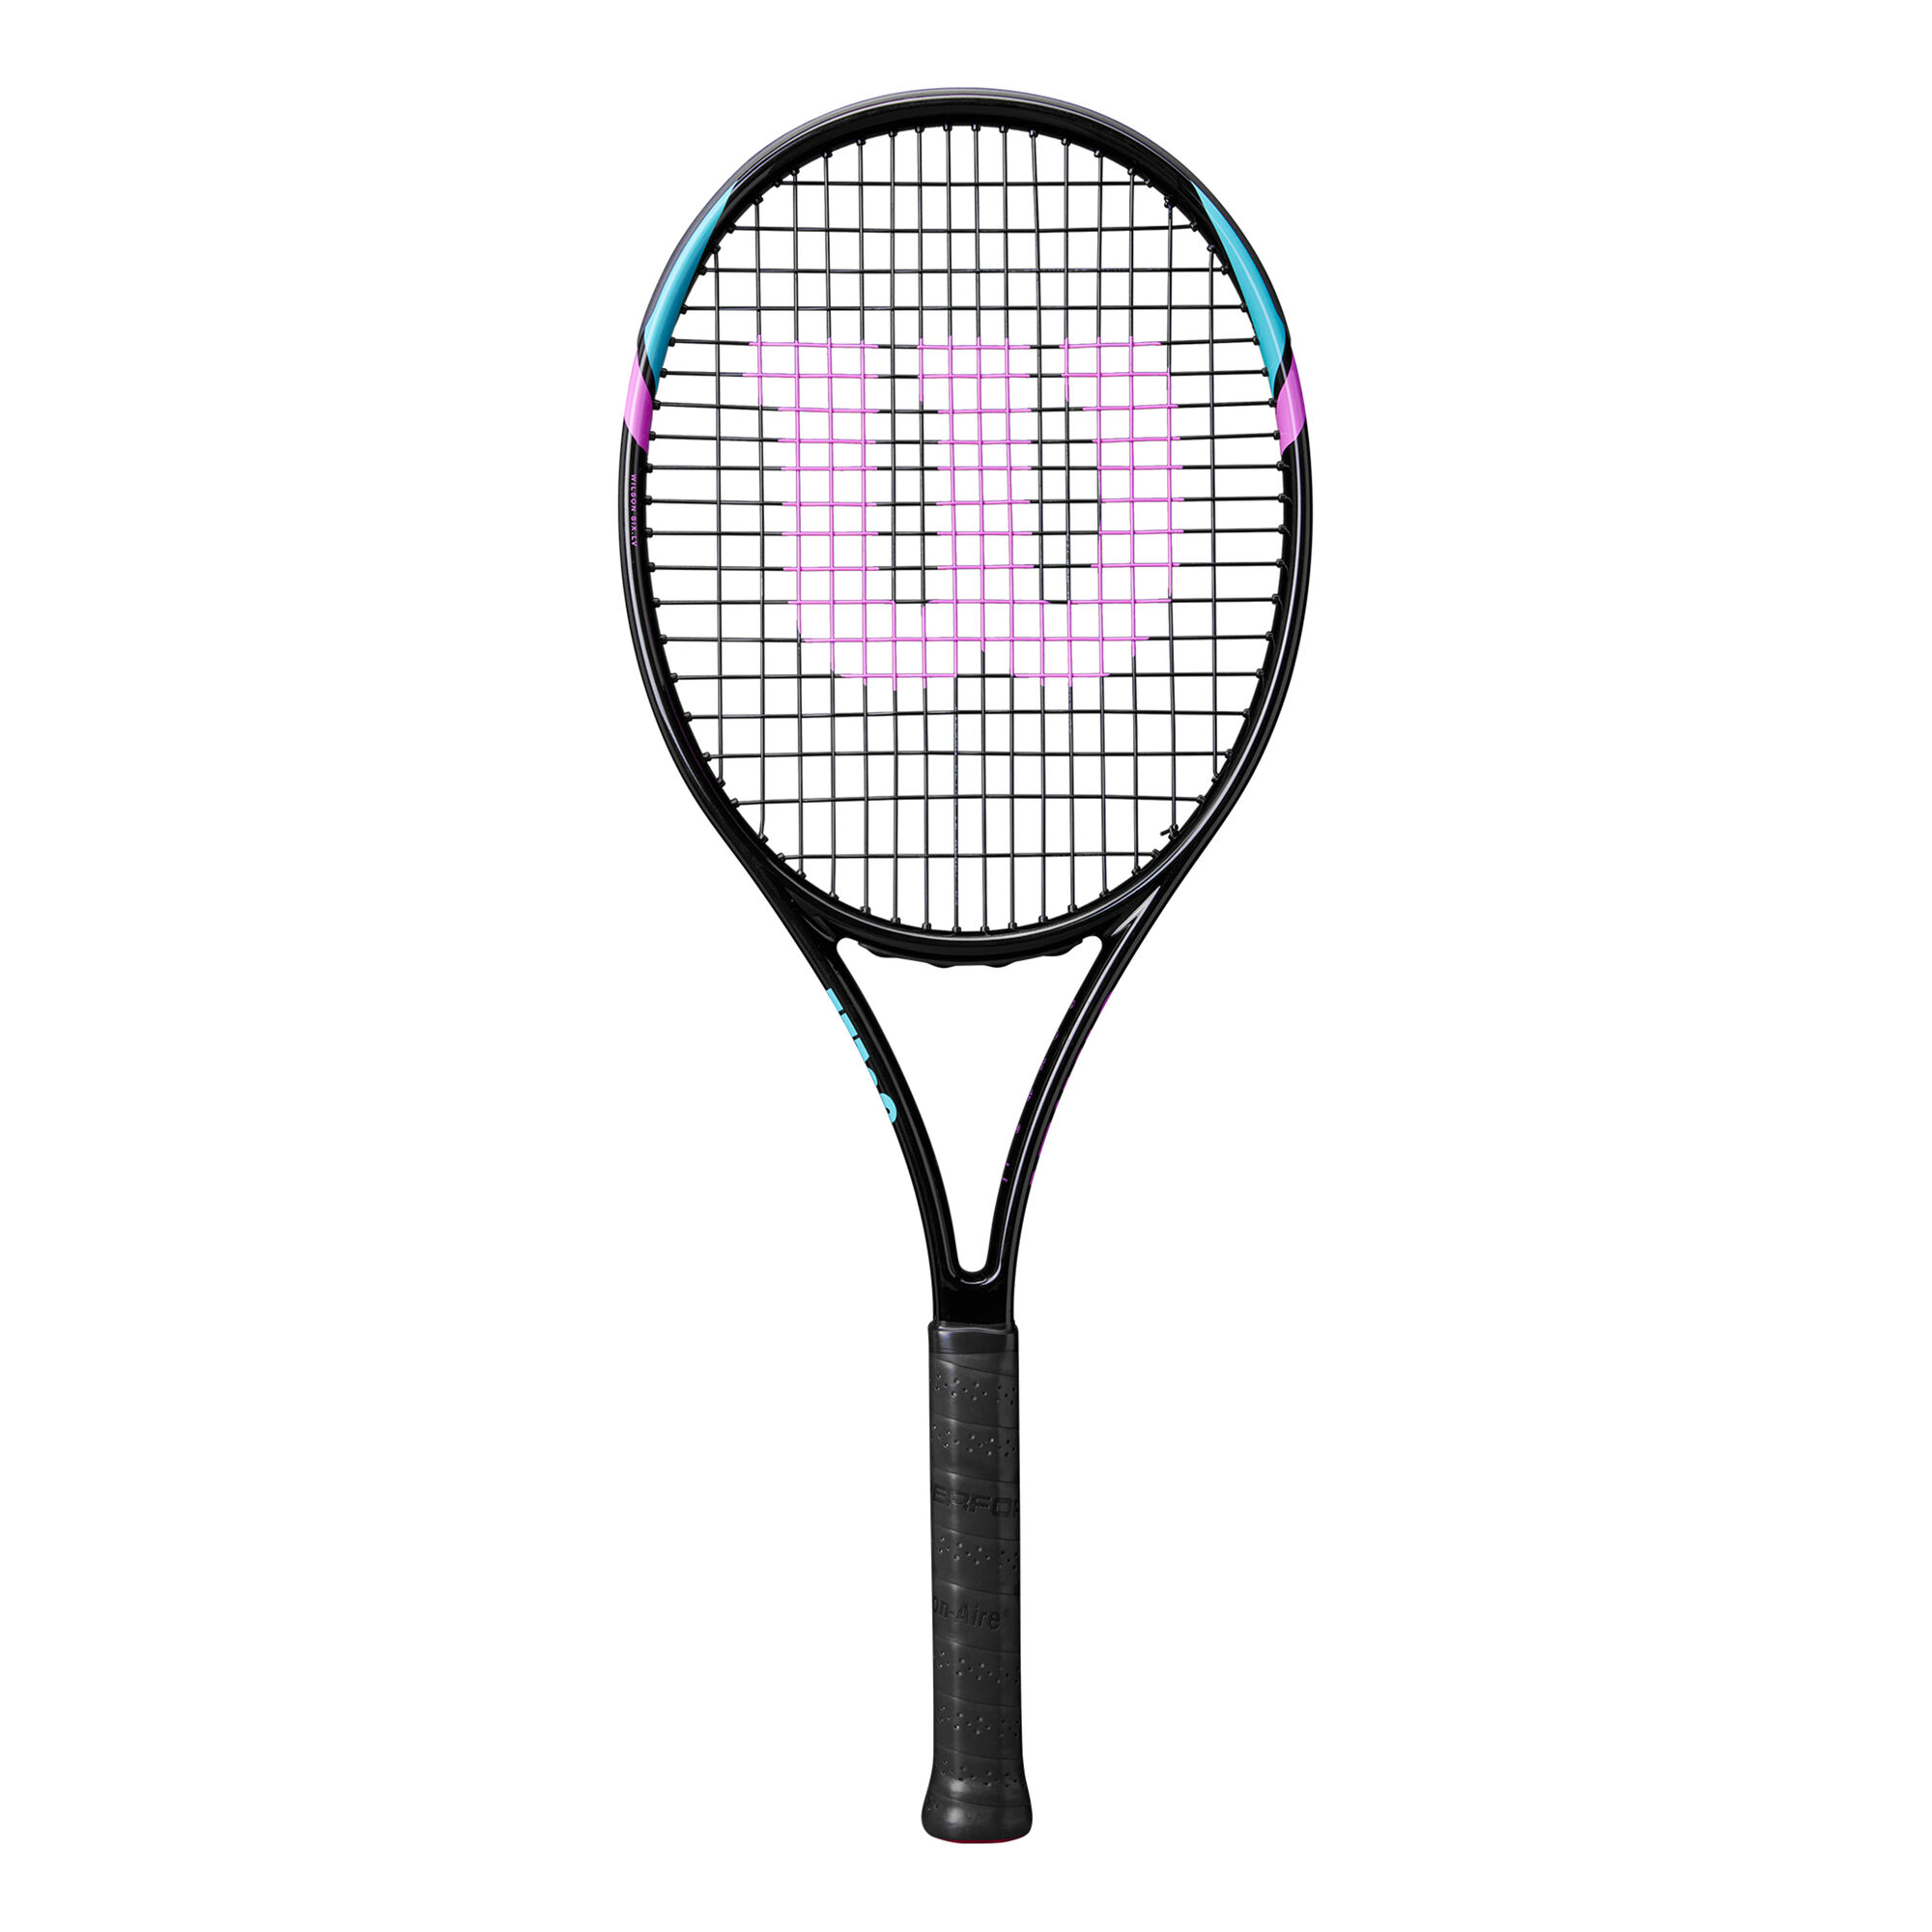 buy Wilson Six Lv Comfort Rackets online